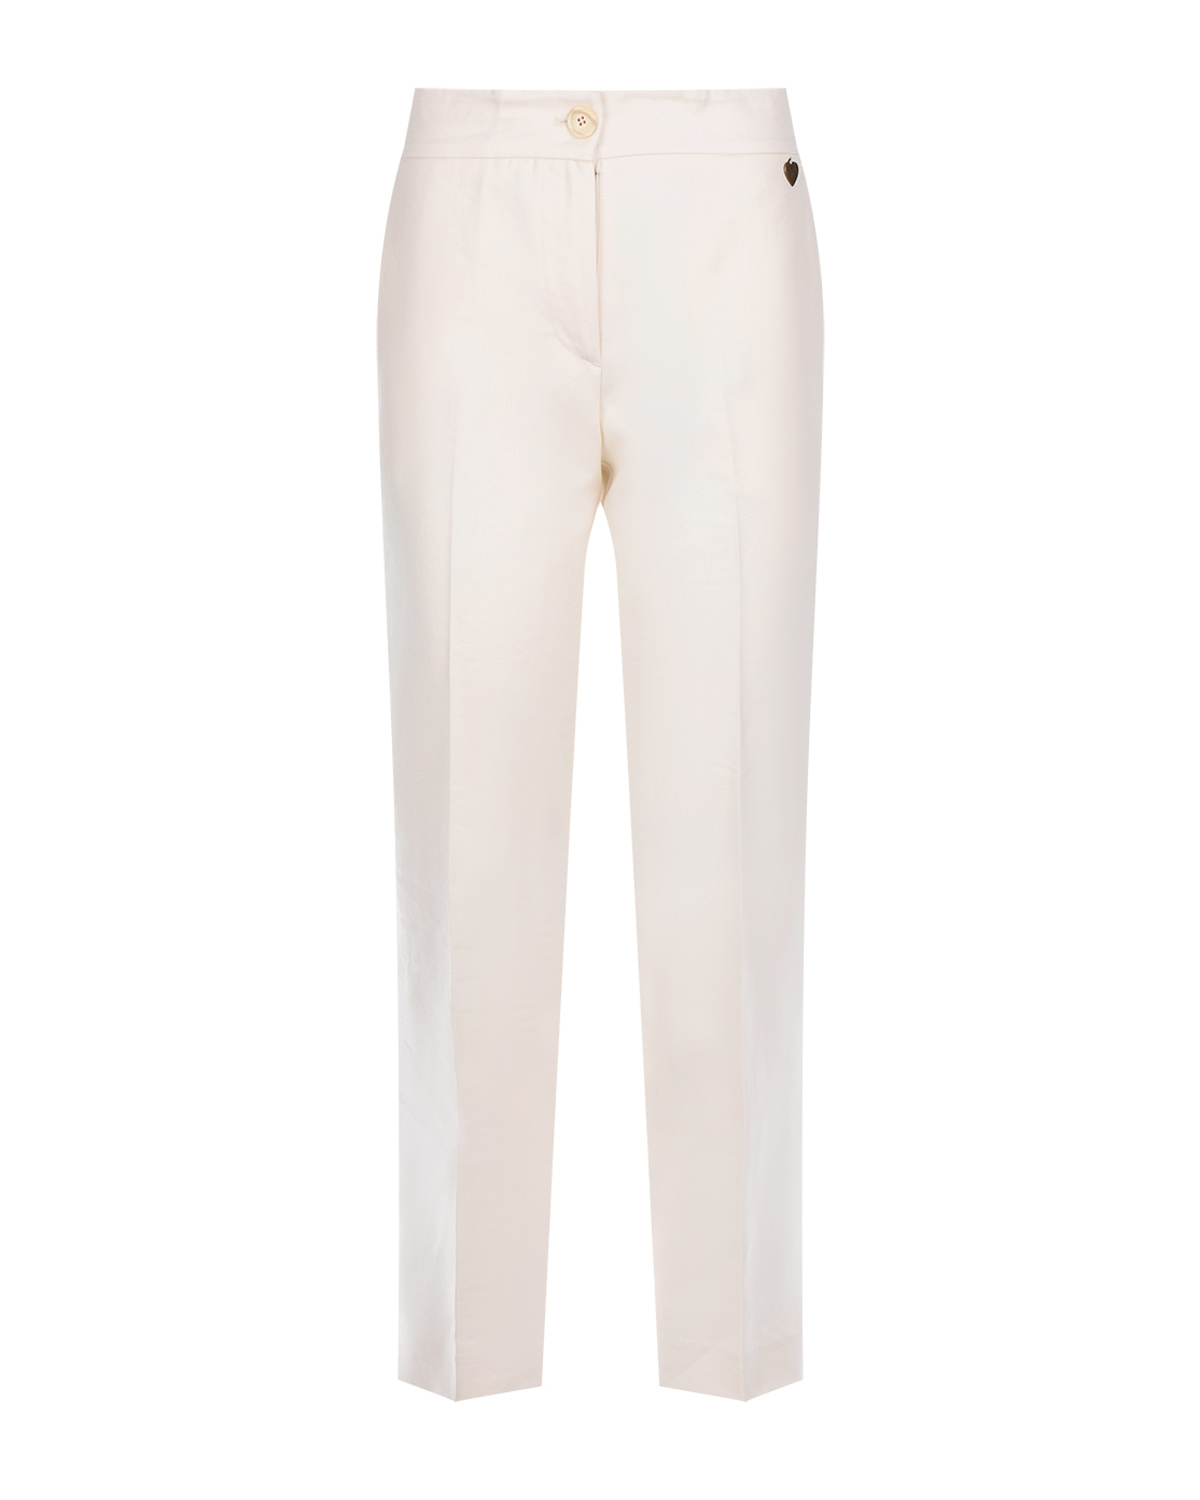 Бежевые брюки прямого кроя со стрелками TWINSET, размер 40, цвет бежевый - фото 1